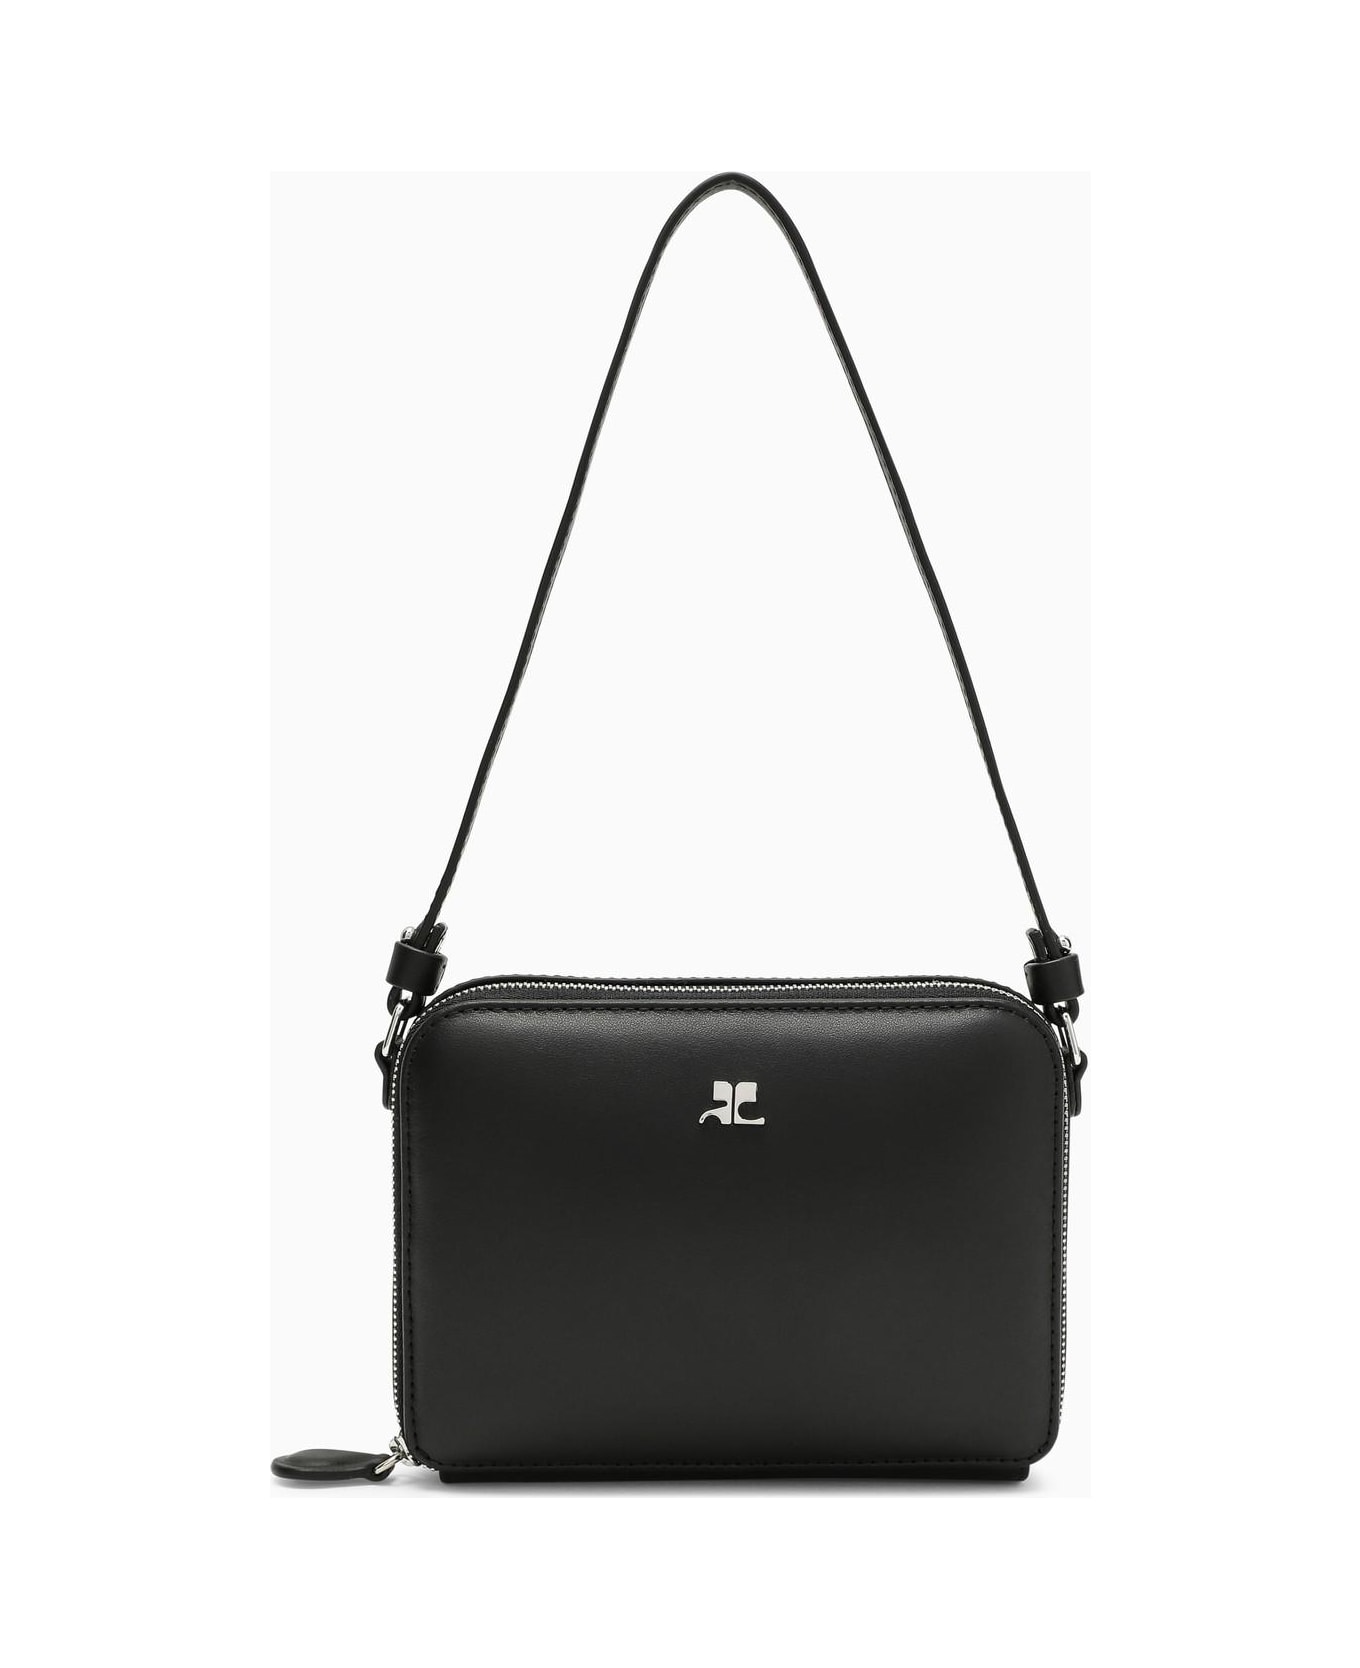 Courrèges Black Leather Shoulder Bag - 9999 BLACK